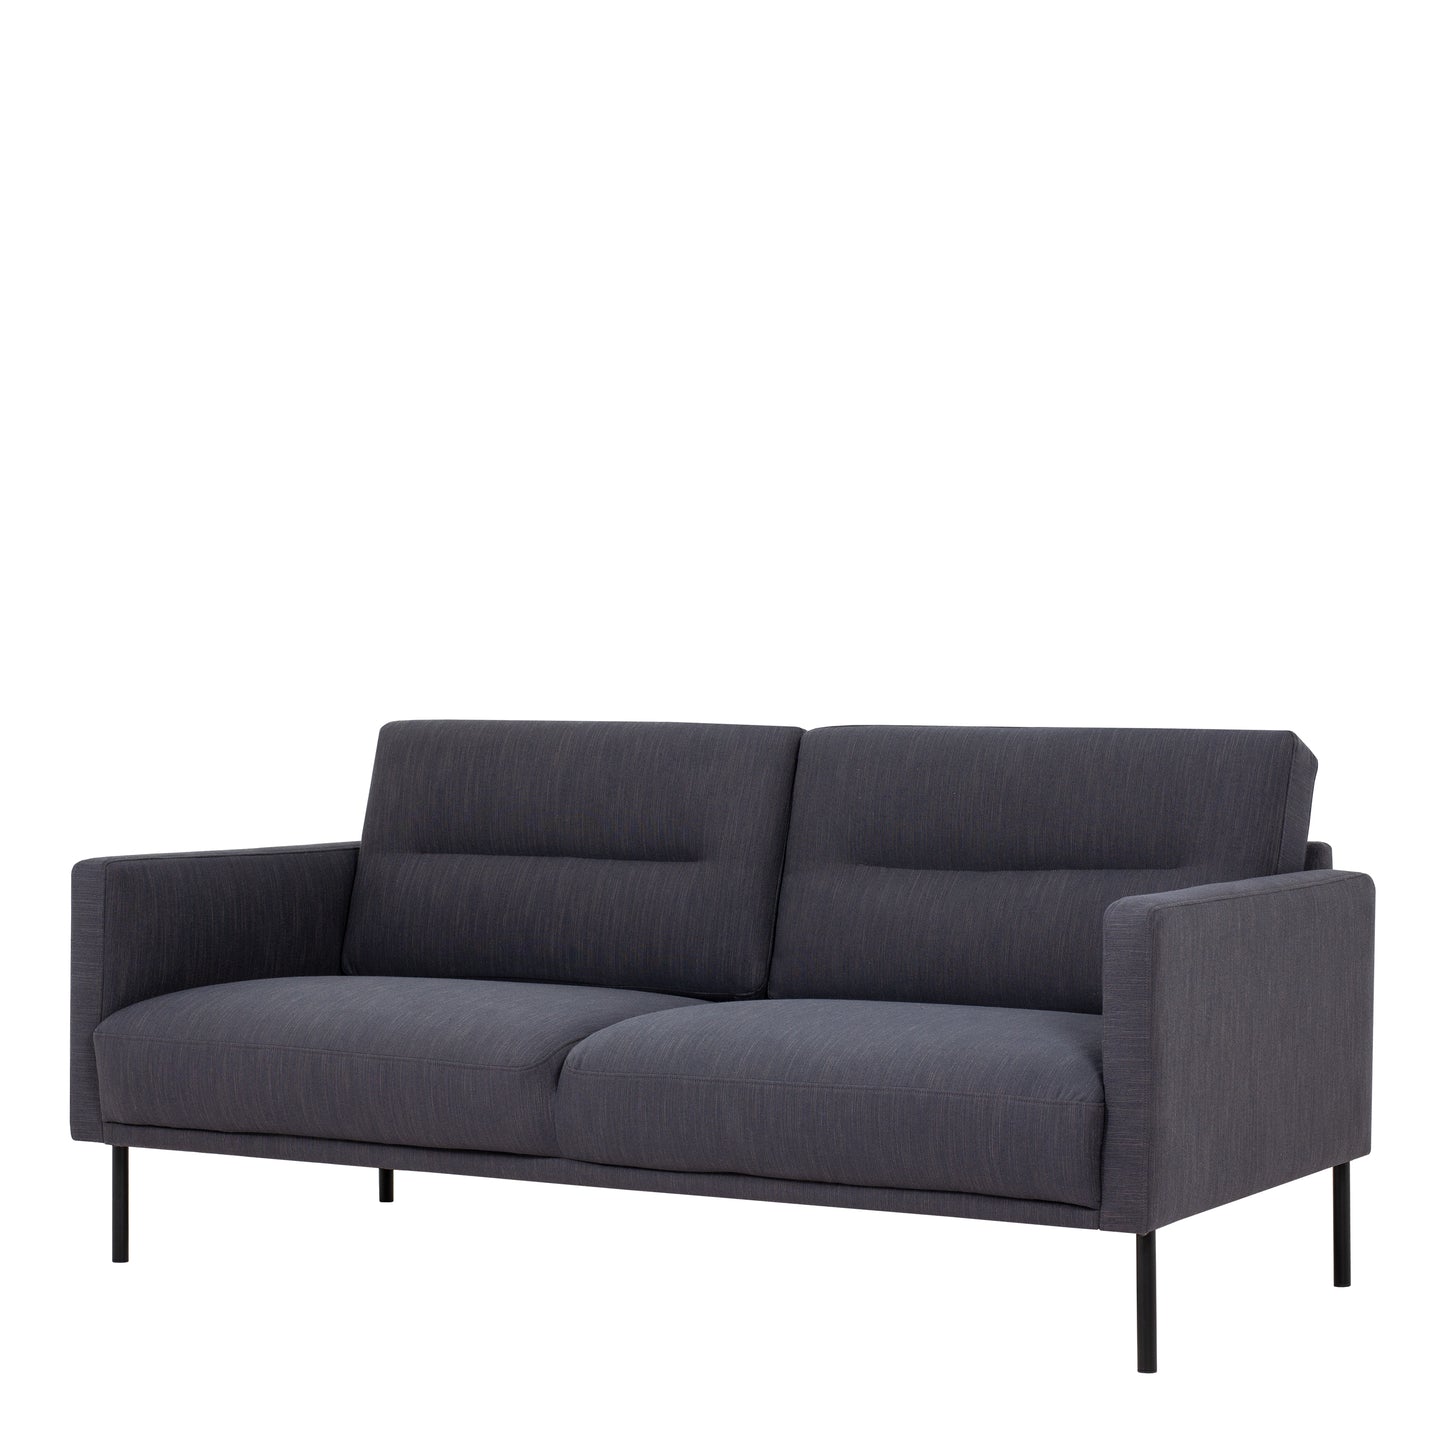 Larvik  2.5 Seater Sofa - Anthracite, Black Legs